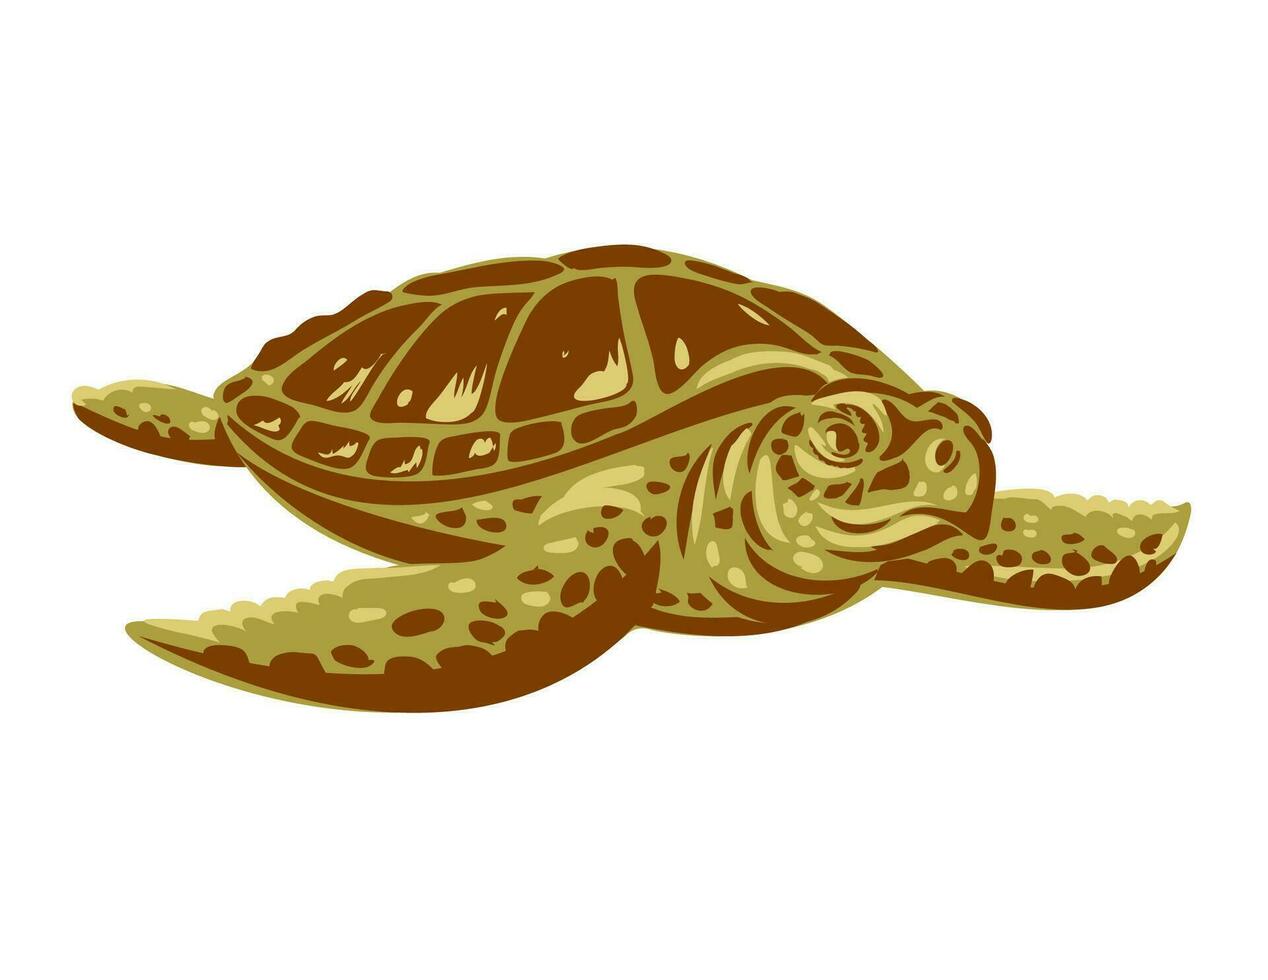 Kemps Ridley Meer Schildkröte oder atlantisch Ridley Meer Schildkröte Vorderseite Aussicht wpa Kunst vektor